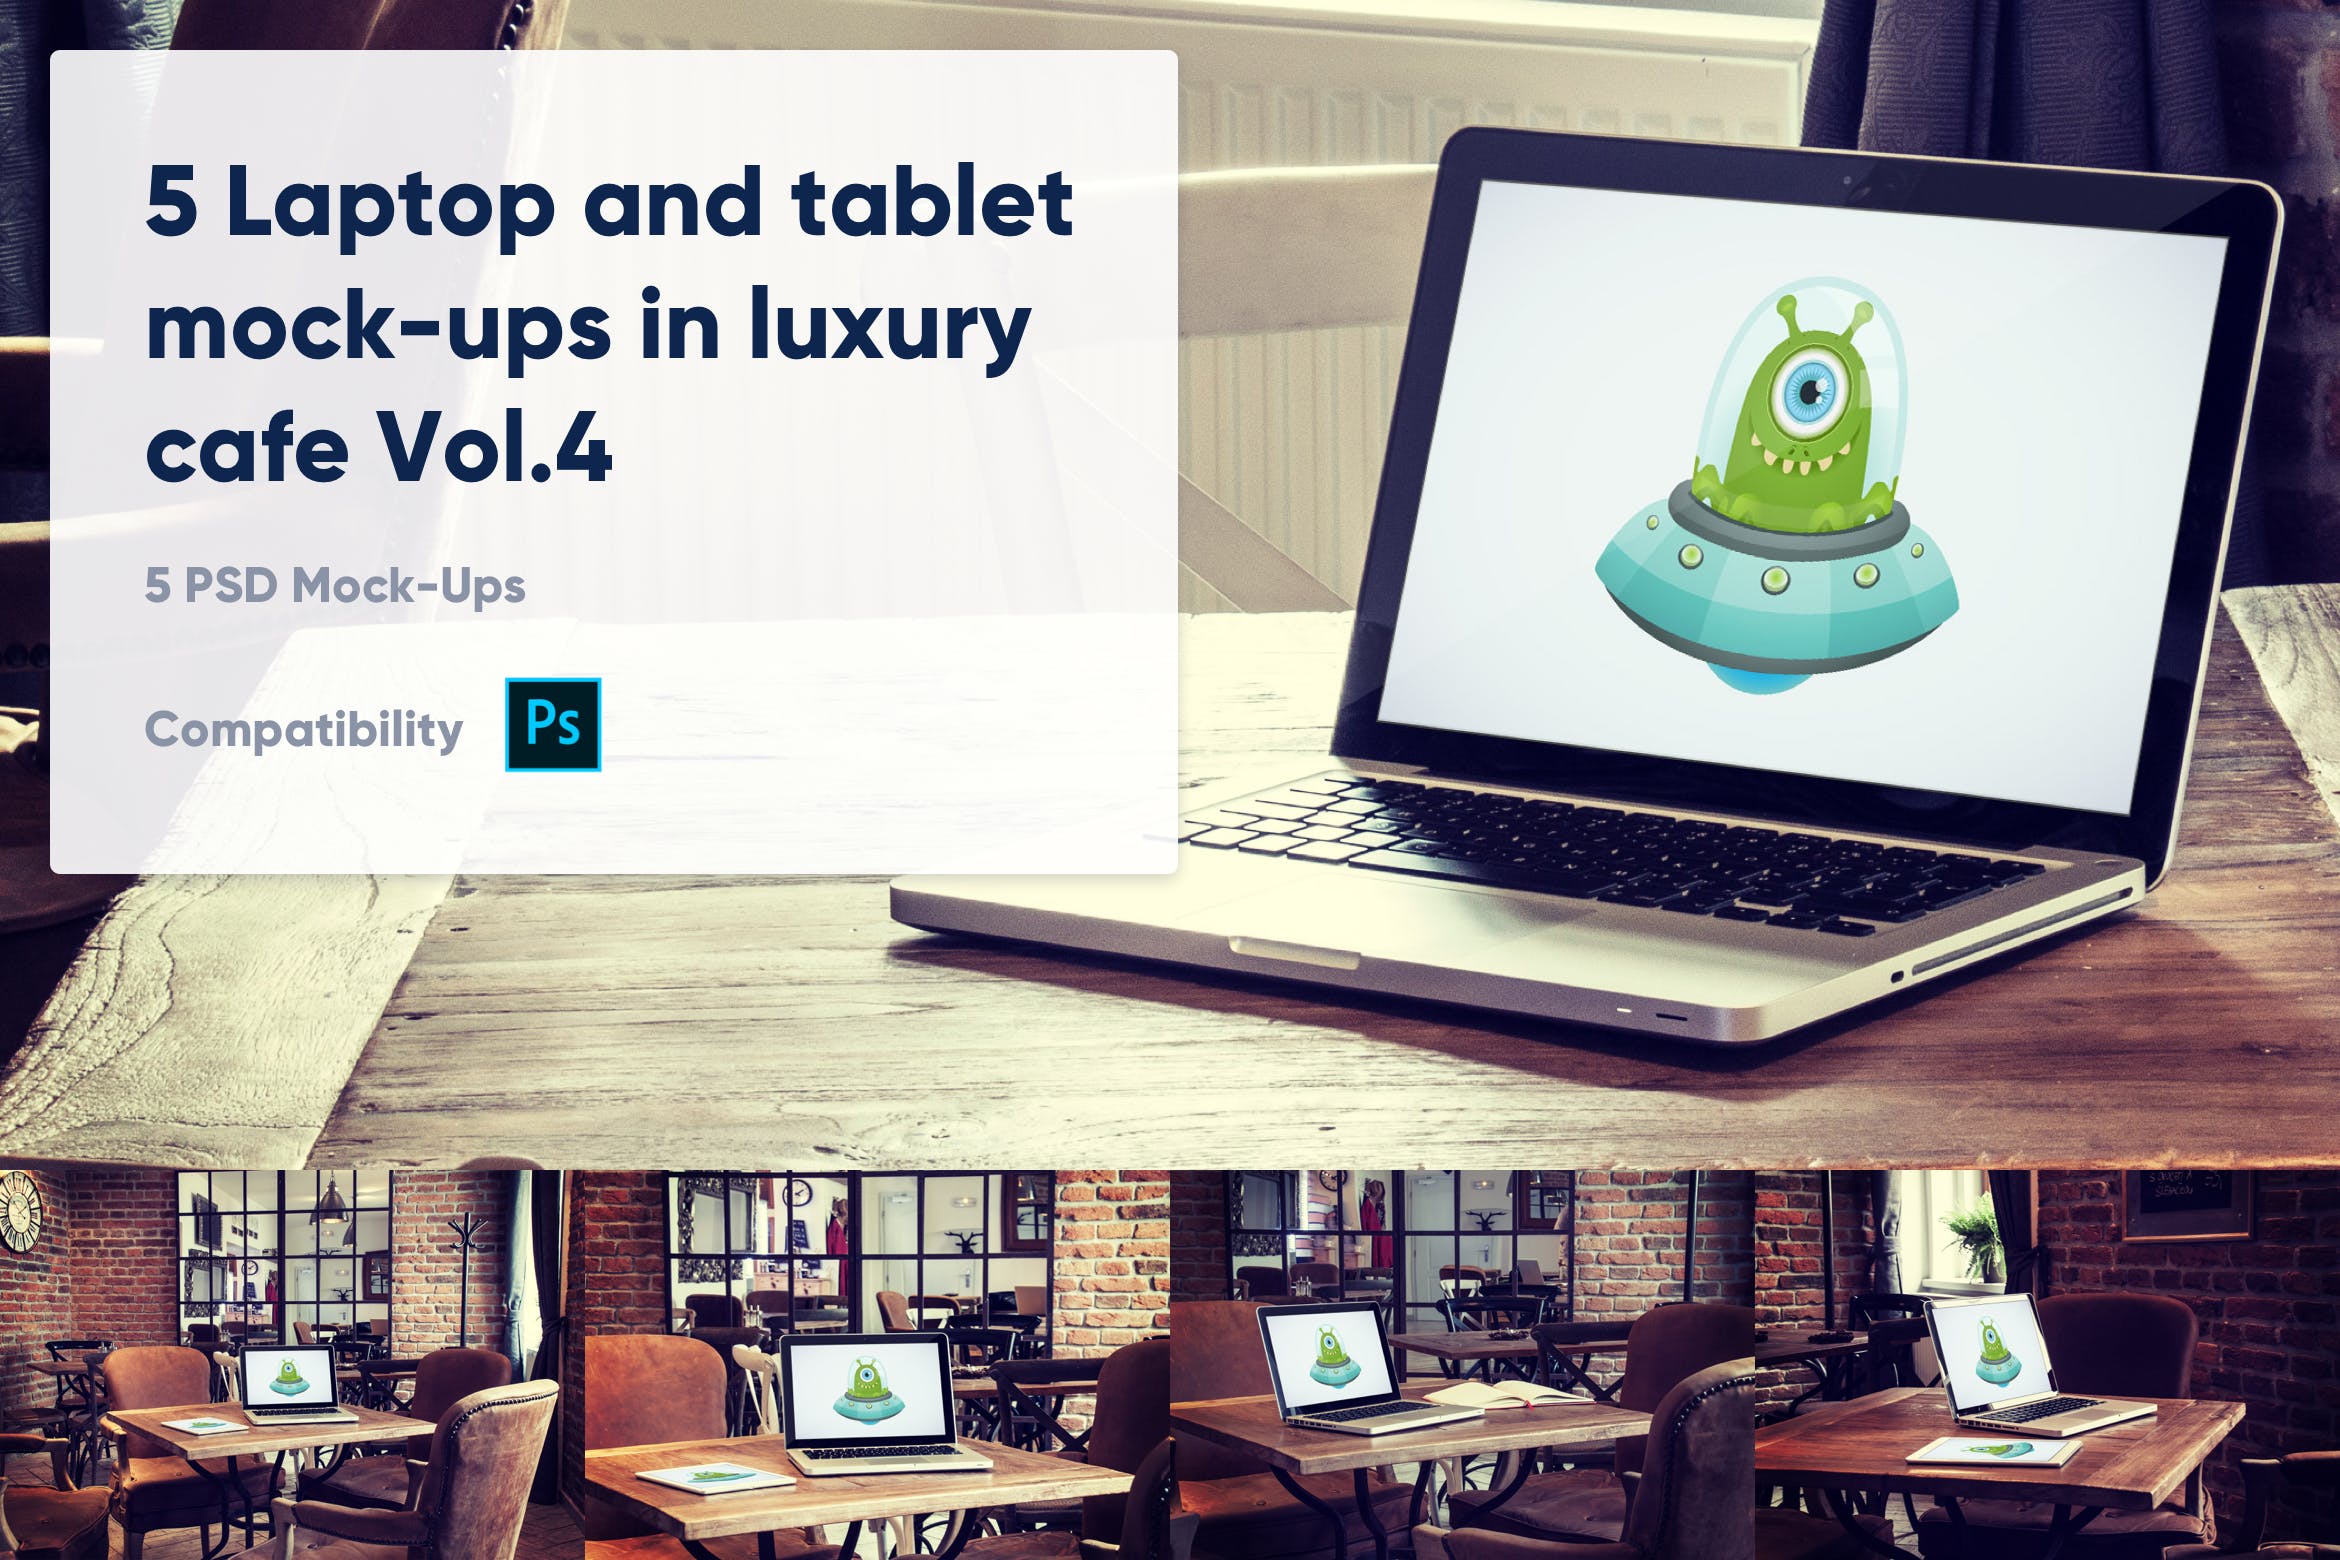 咖啡店场景MacBook&iPad屏幕预览非凡图库精选样机模板v4 5 Laptop and tablet mock-ups in cafe Vol. 4插图